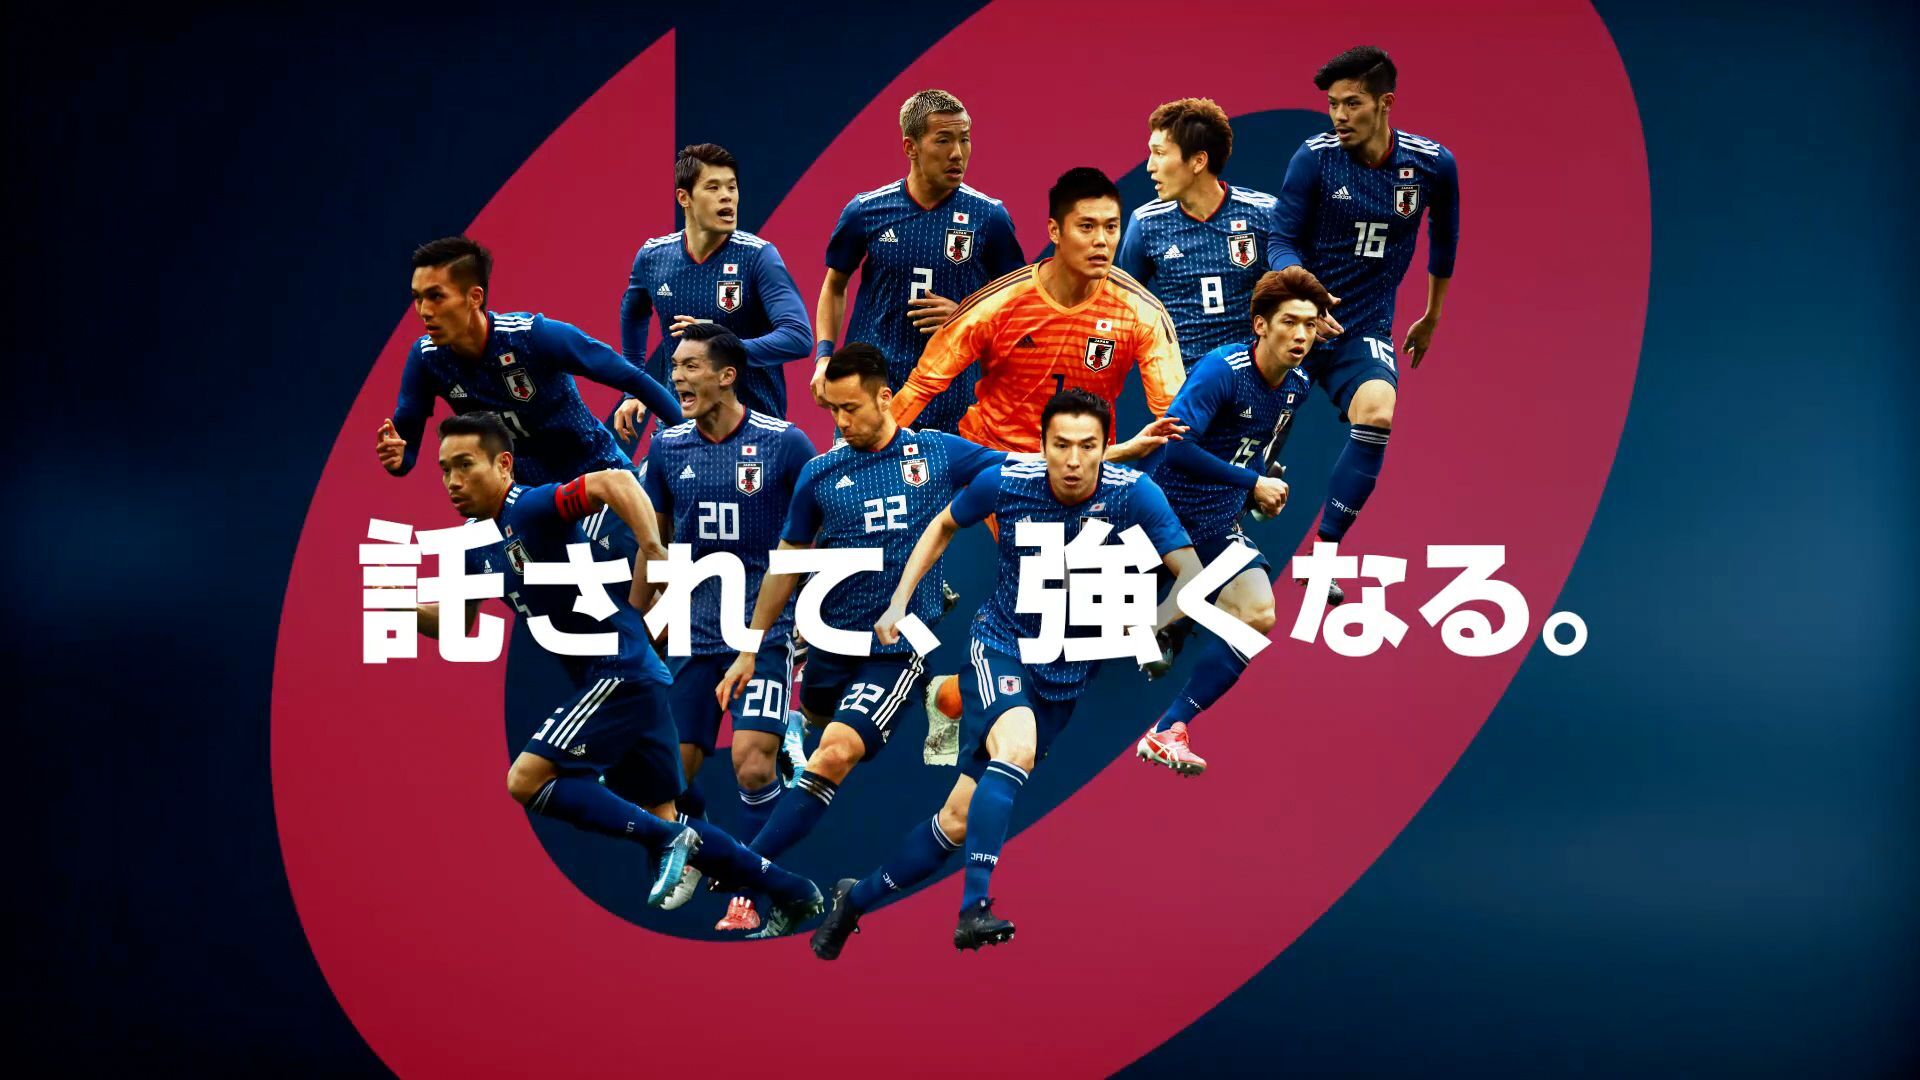 サッカー日本代表応援cm レッド ブルー 篇を3月15日より放送開始 大東建託株式会社のプレスリリース